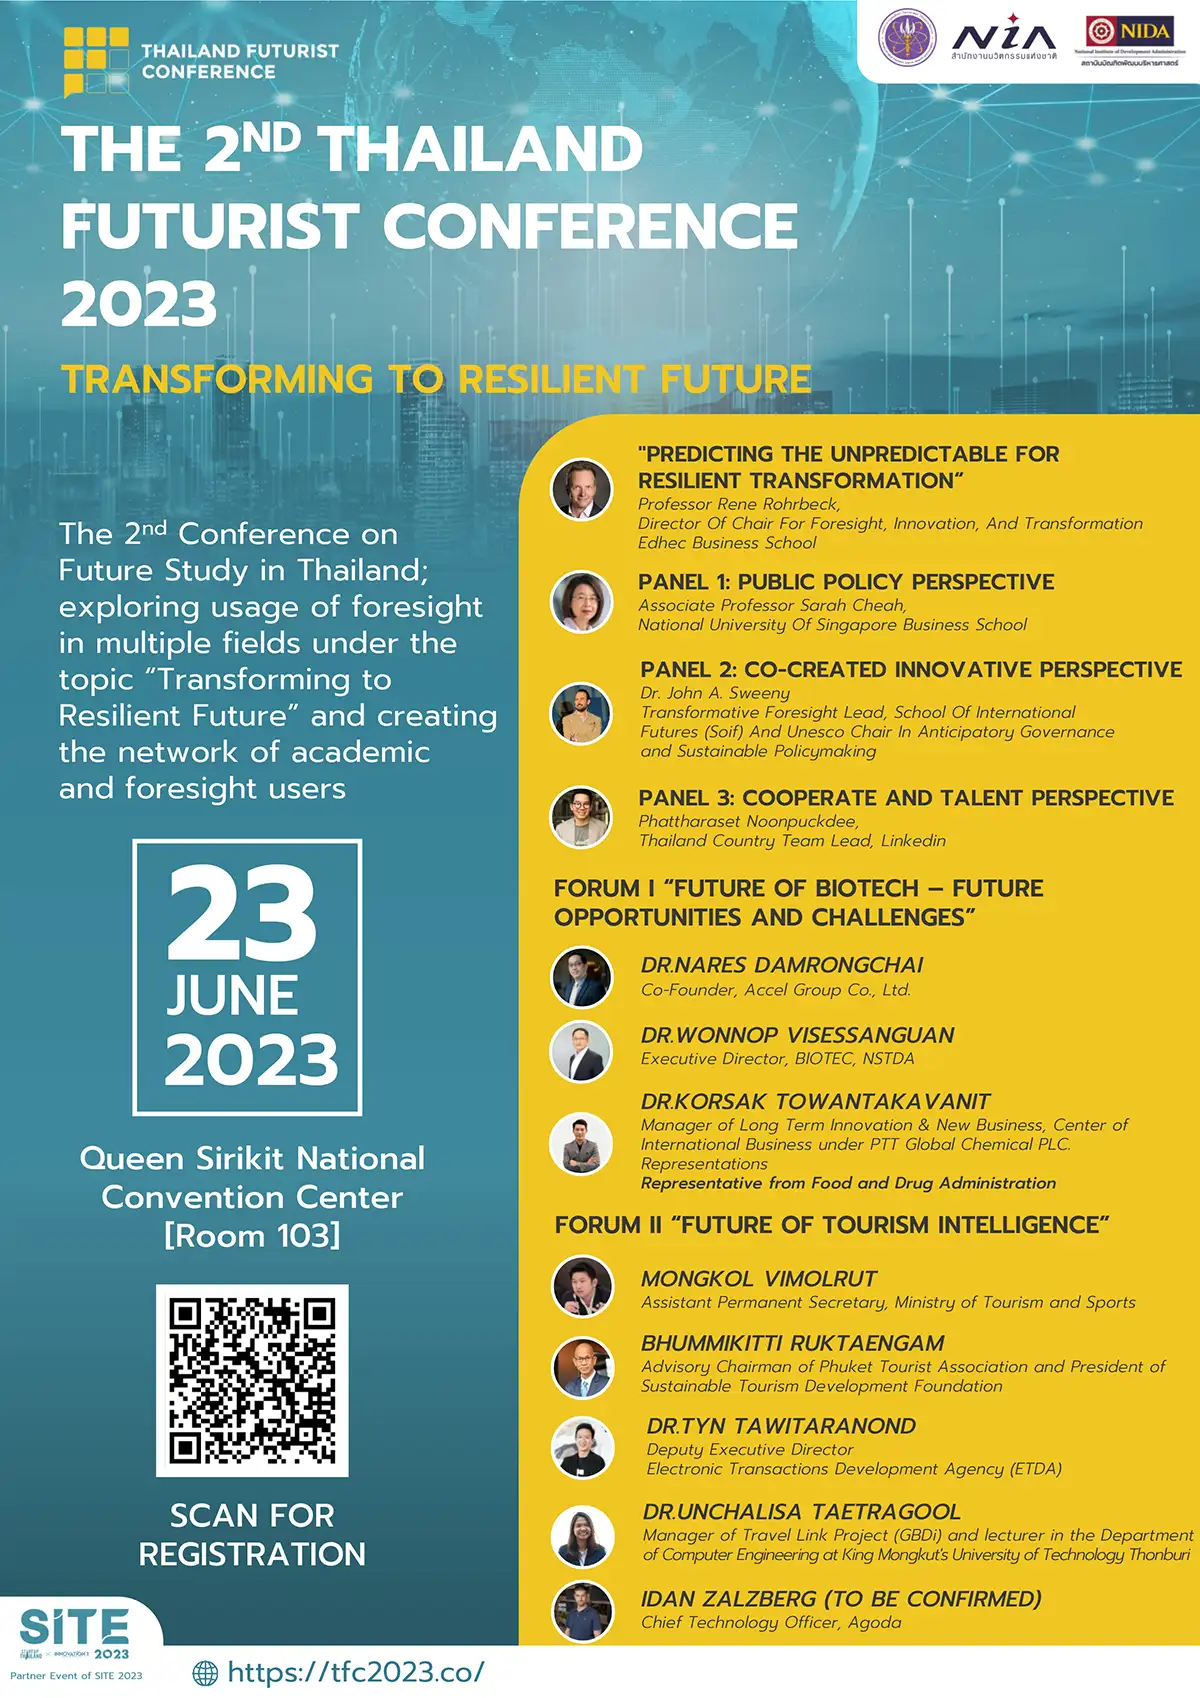 สัมมนาวิชาการระดับชาติด้านอนาคตศึกษาครั้งที่ 2  The 2nd THAILAND FUTURIST CONFERENCE 2023 หัวข้อ “Transforming to Resilient Future”